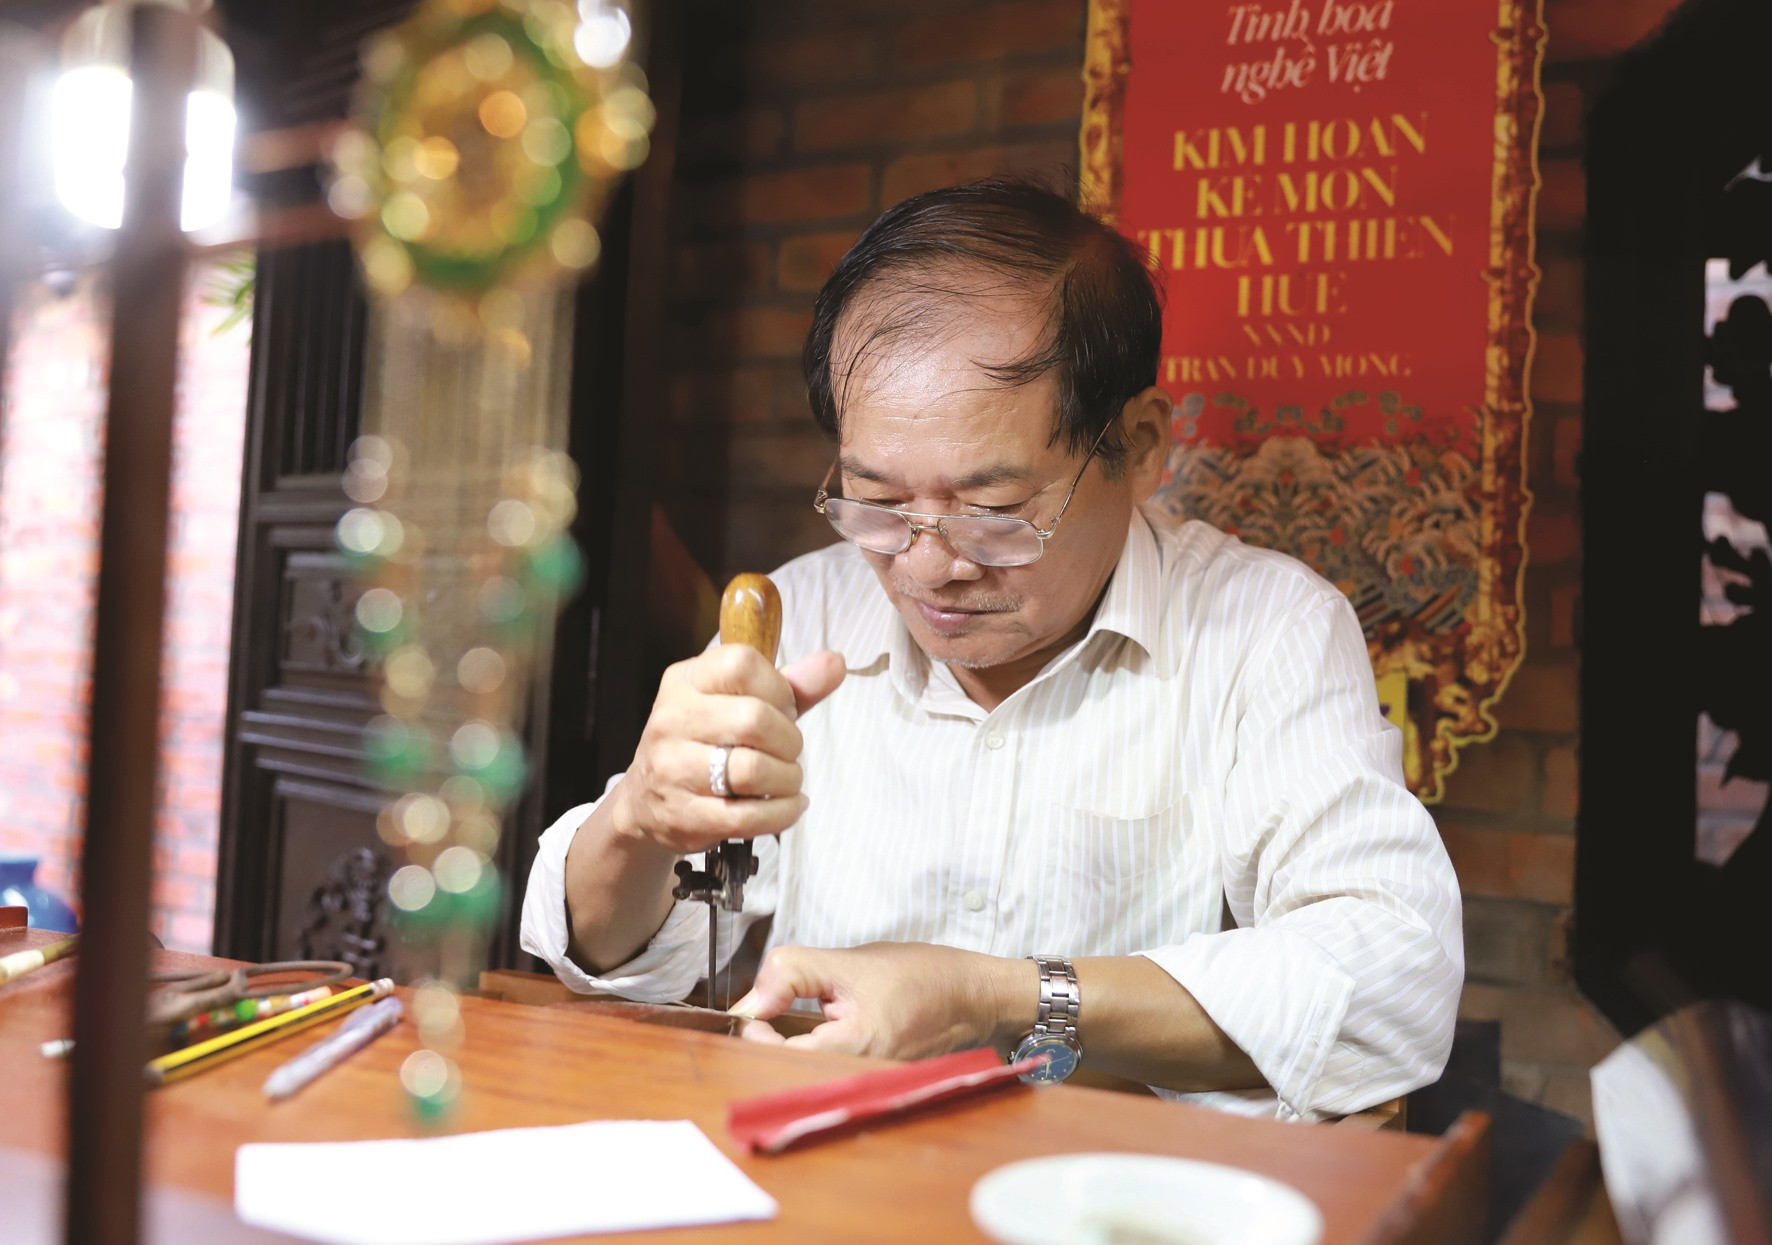 Dù tuổi cao, Nghệ nhân ưu tú Trần Duy Mong vẫn tự tay thiết kế và chế tác những tác phẩm kim hoàn mới.